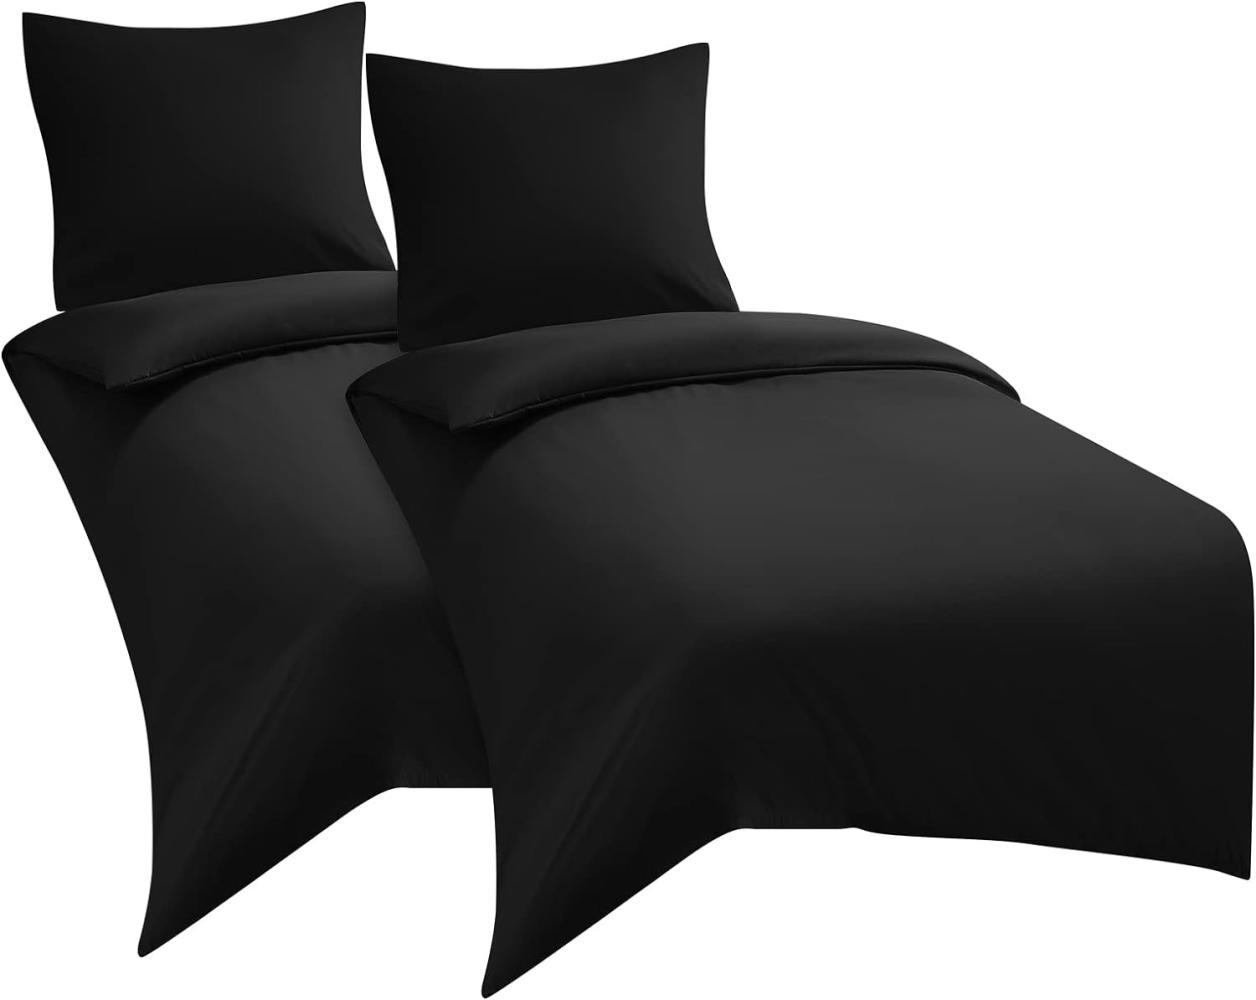 WAVVE Bettwäsche 135x200 4teilig Schwarz - Bettbezüge 135 x 200 2er Set mit Kissenbezüge 80x80 cm, Bettwäsche-Sets 135x200cm aus Mikrofaser mit Reißverschluss Weich Bild 1